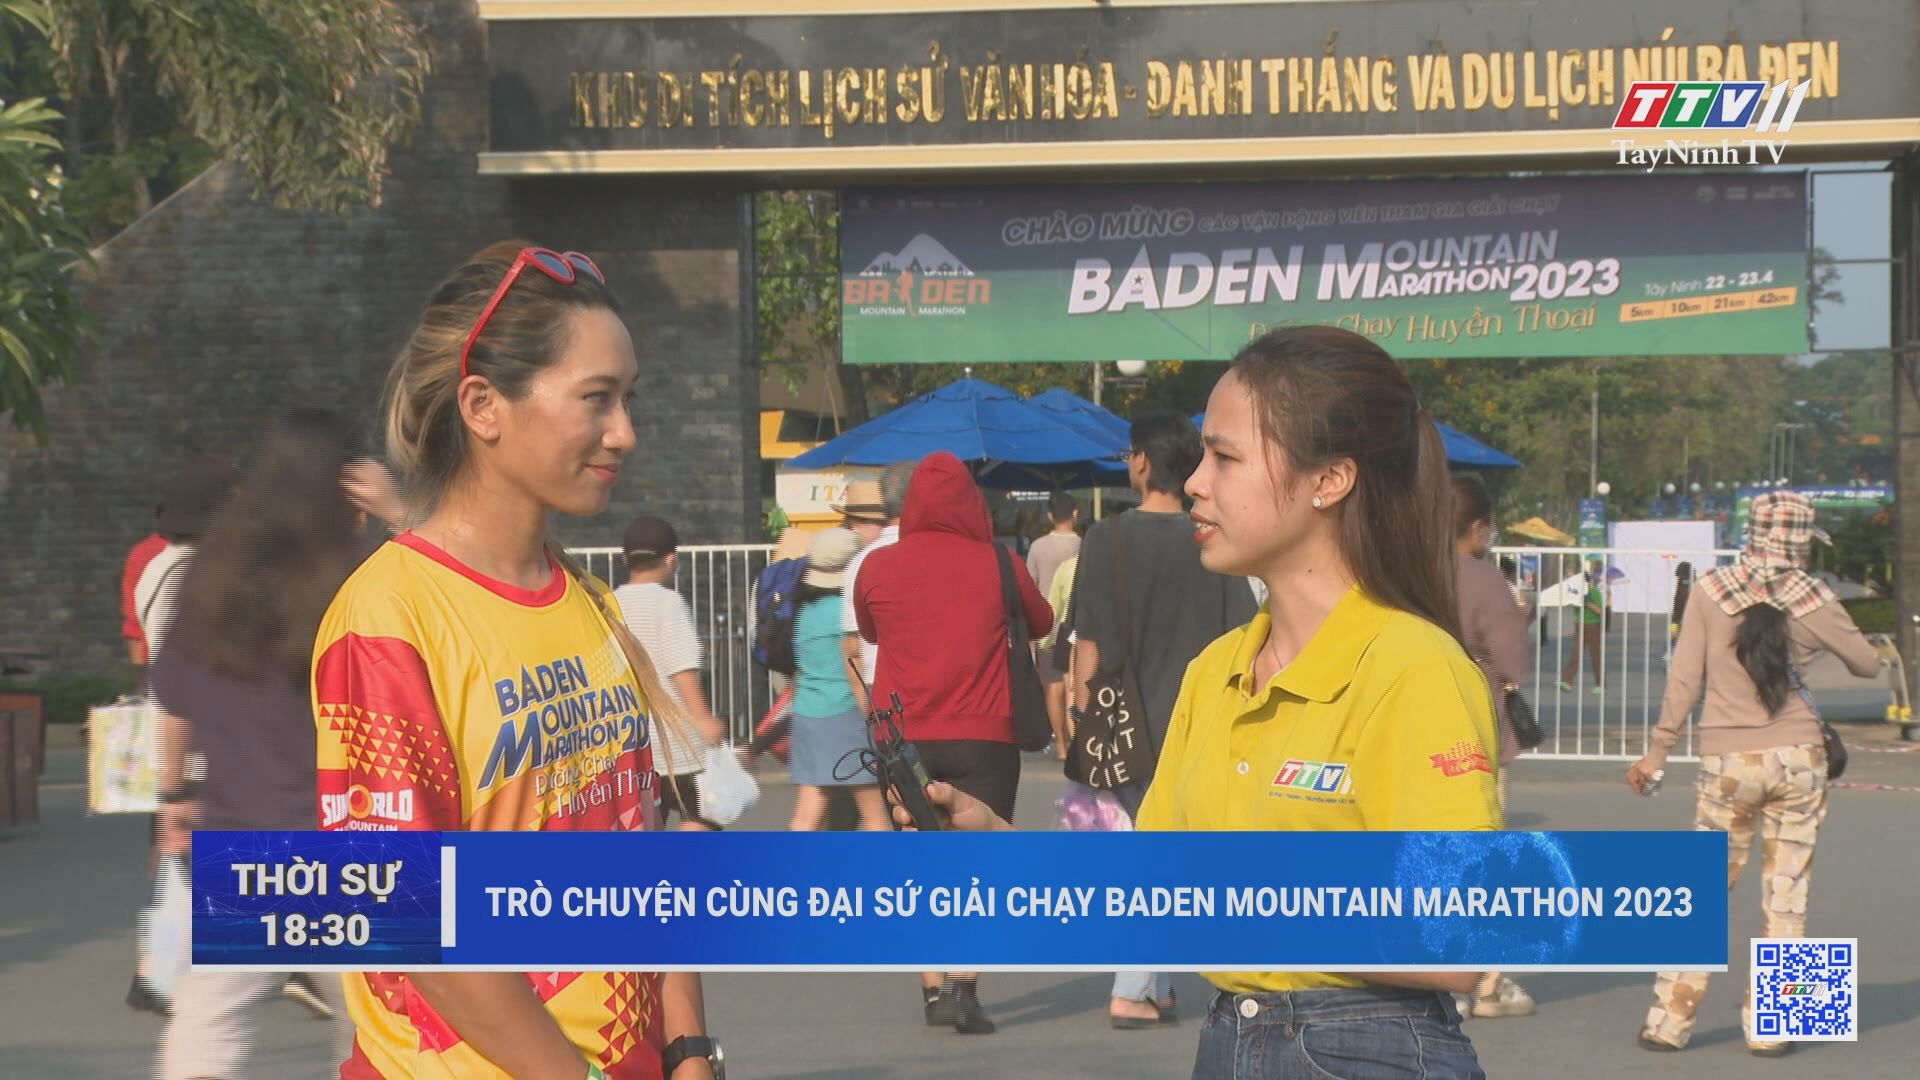 Trò chuyện cùng Đại sứ giải chạy BaDen Mountain Marathon 2023 | TayNinhTV